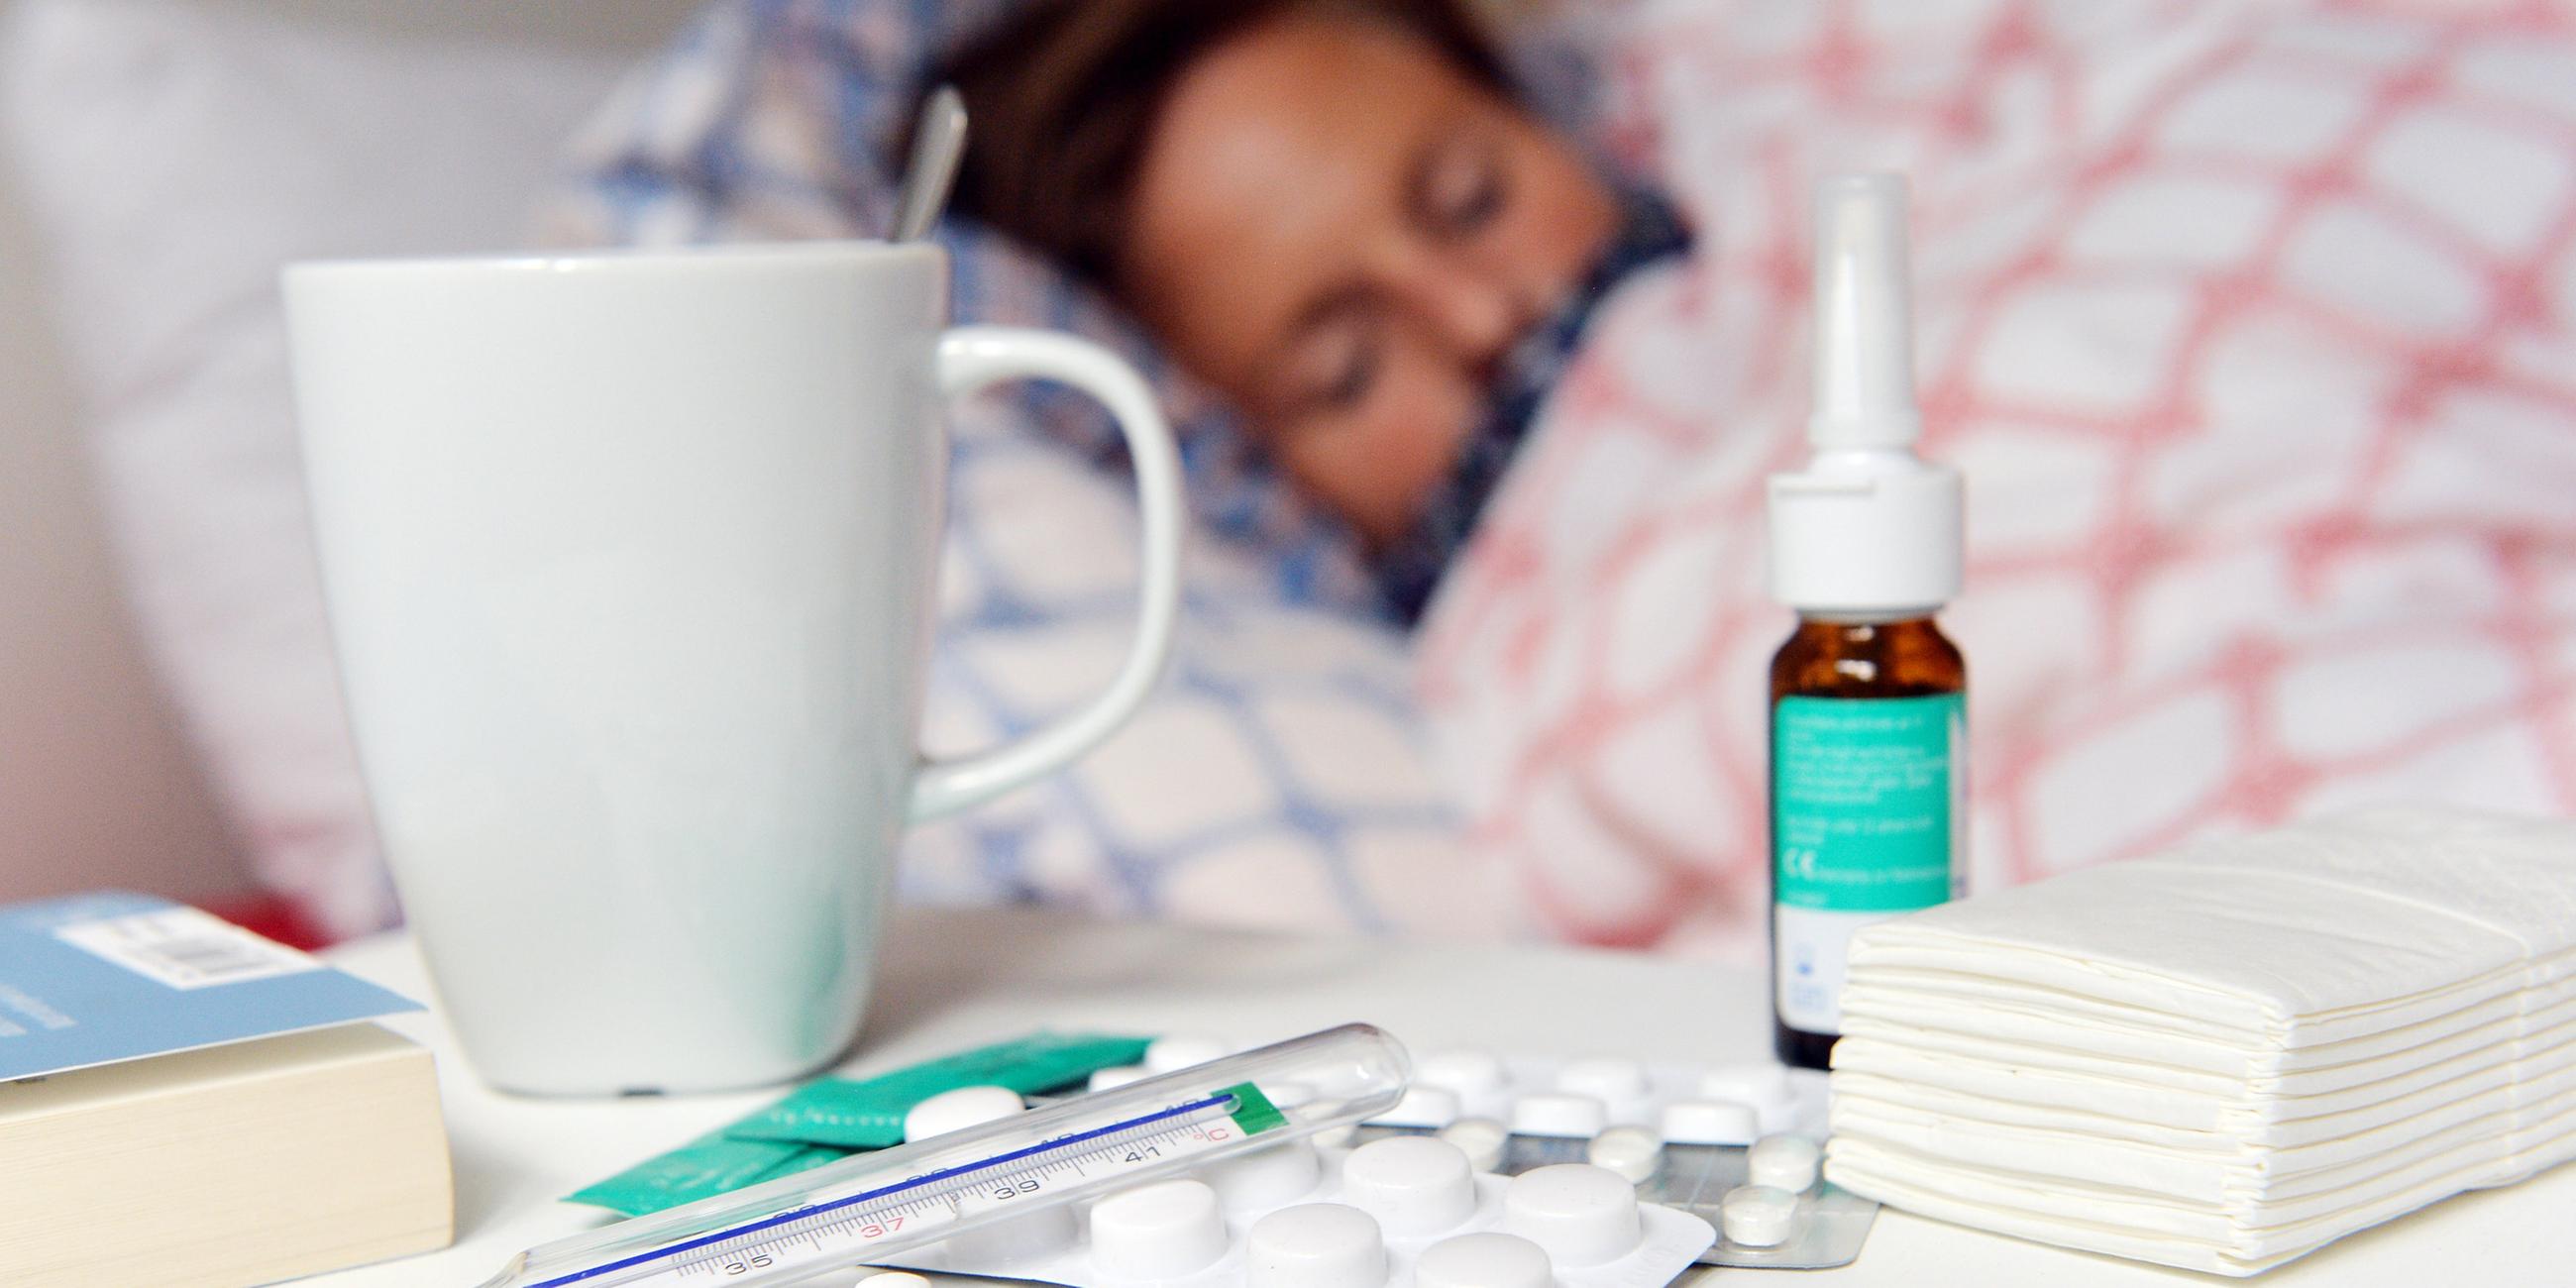 Eine erkältete Person liegt im Bett, auf einem Nachttisch liegen Medikamente und ein Fieberthermometer.